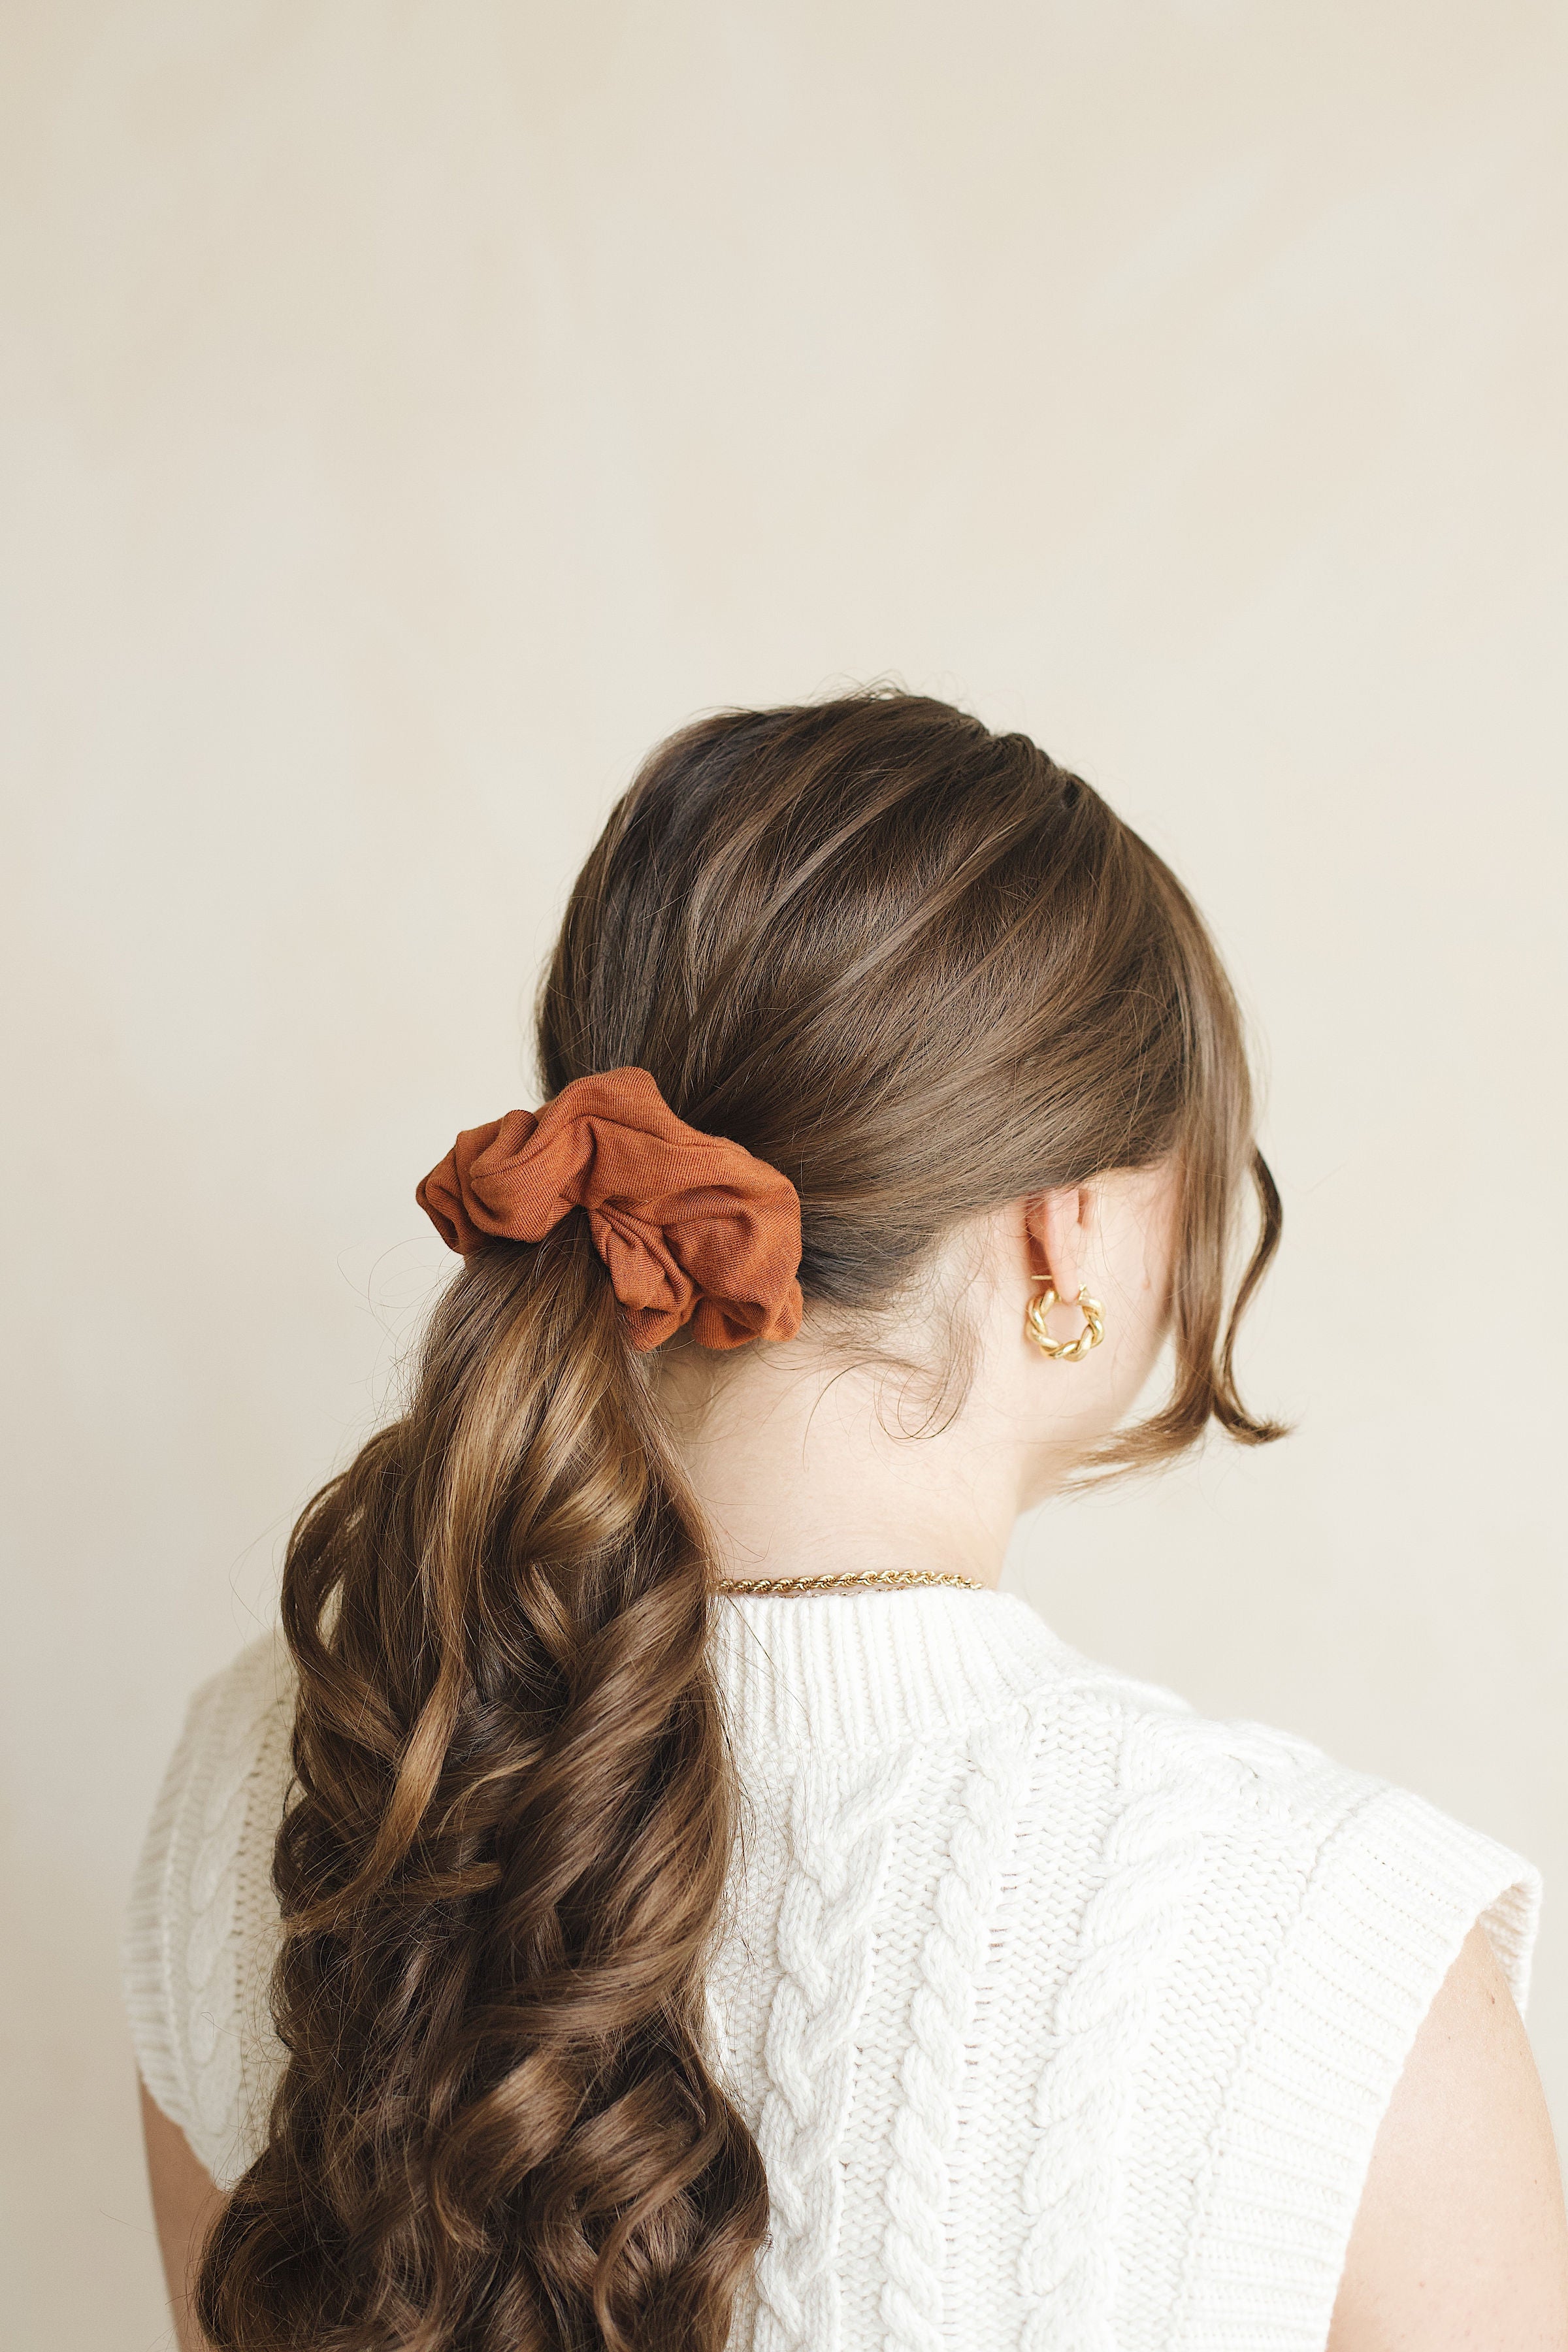 Burnt Orange Scrunchie in model's hair